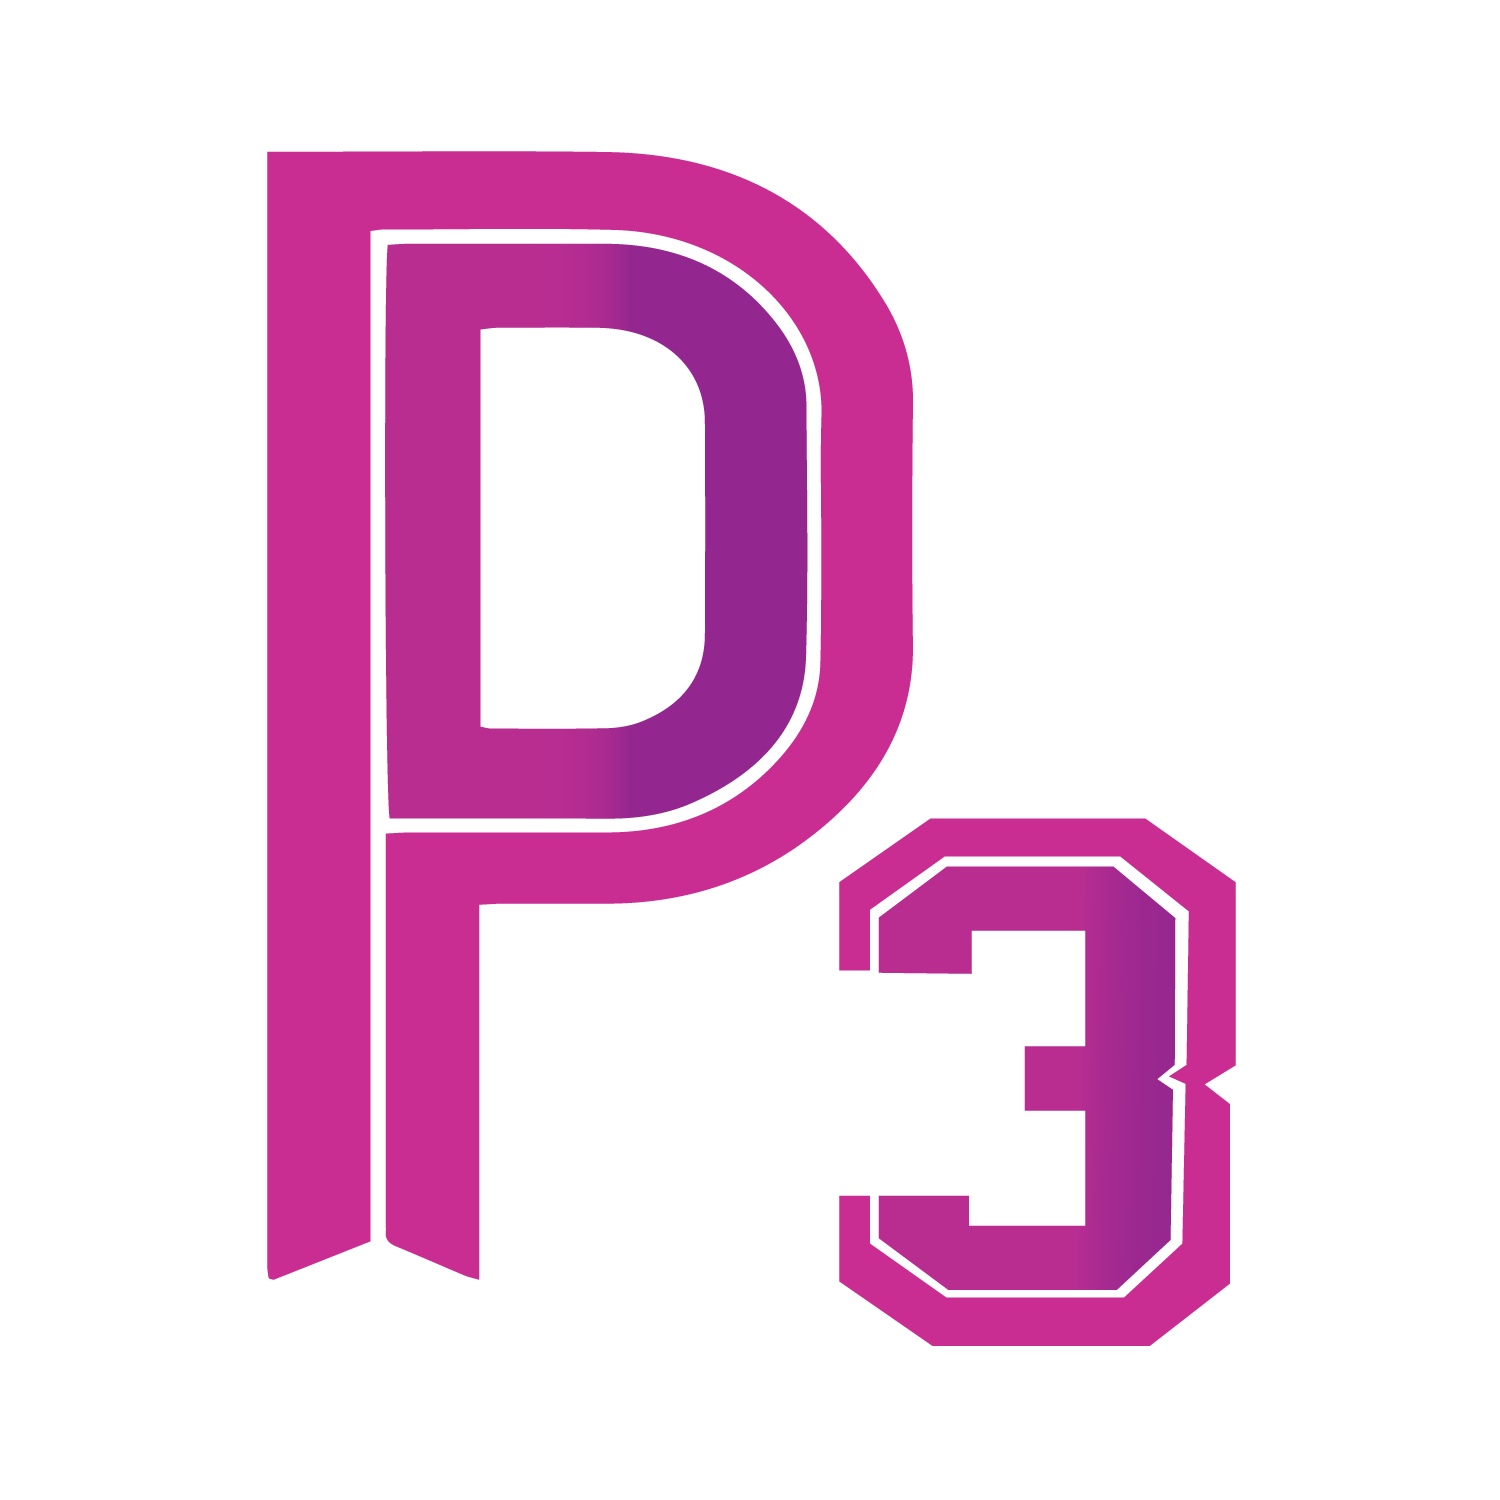 P3 Consulting, LLC